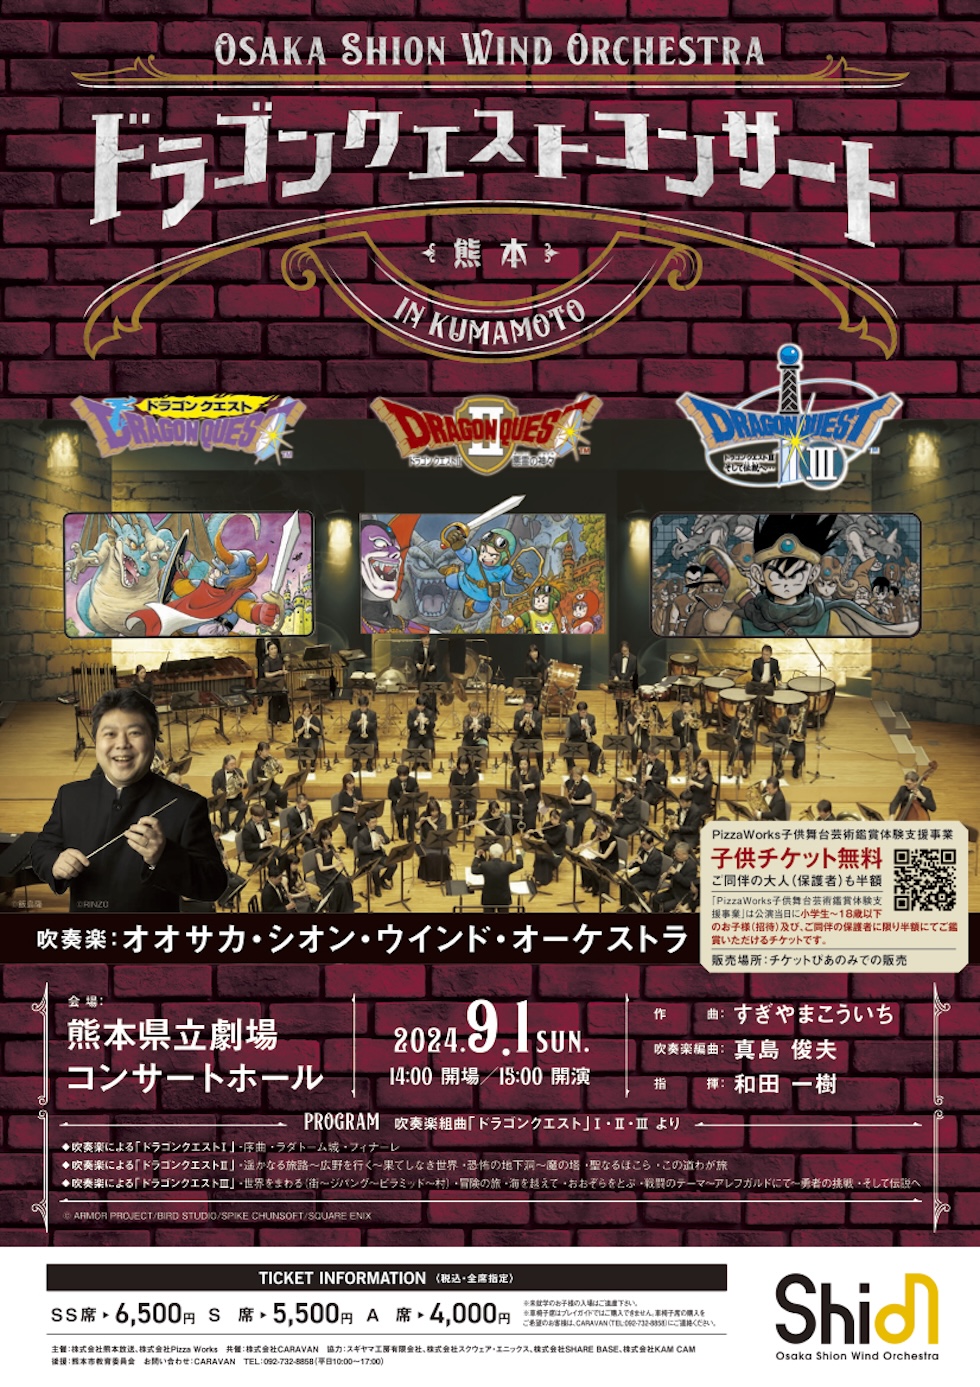 Osaka Shion Wind Orchestra ドラゴンクエストコンサート in 熊本　吹奏楽組曲「ドラゴンクエスト」Ⅰ・Ⅱ・Ⅲ　より